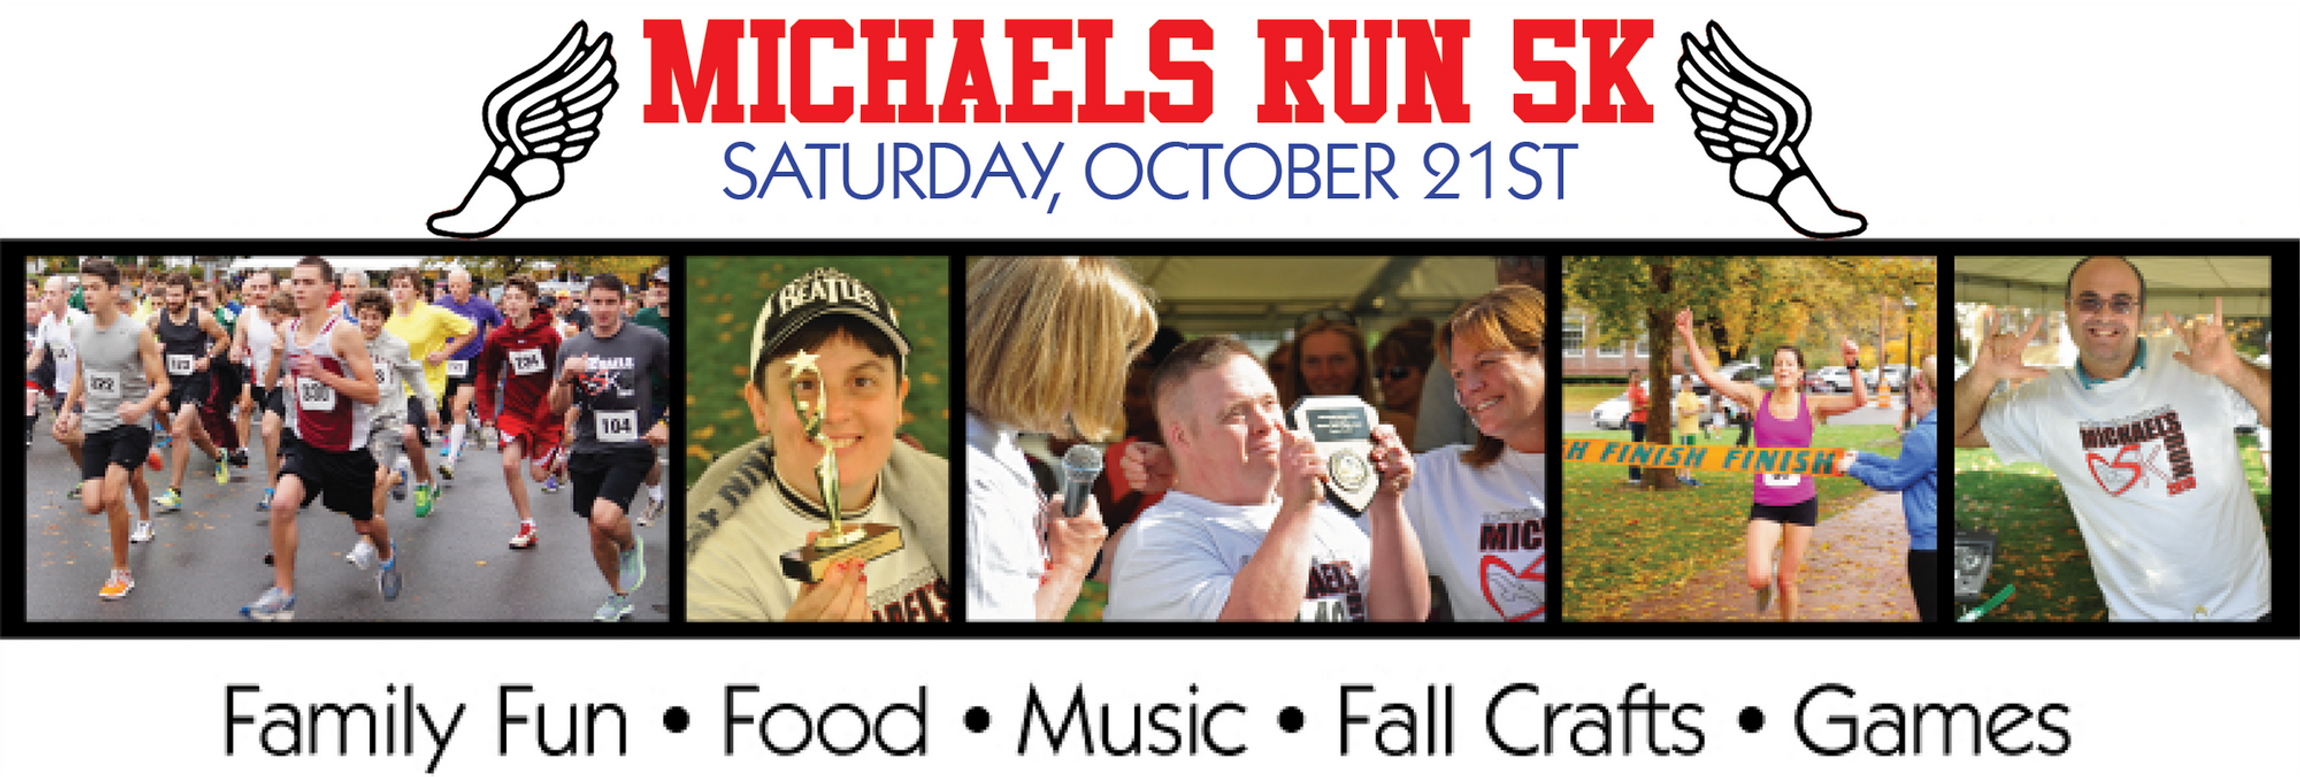 Michael’s Run 5K for Respite Center Oct. 21